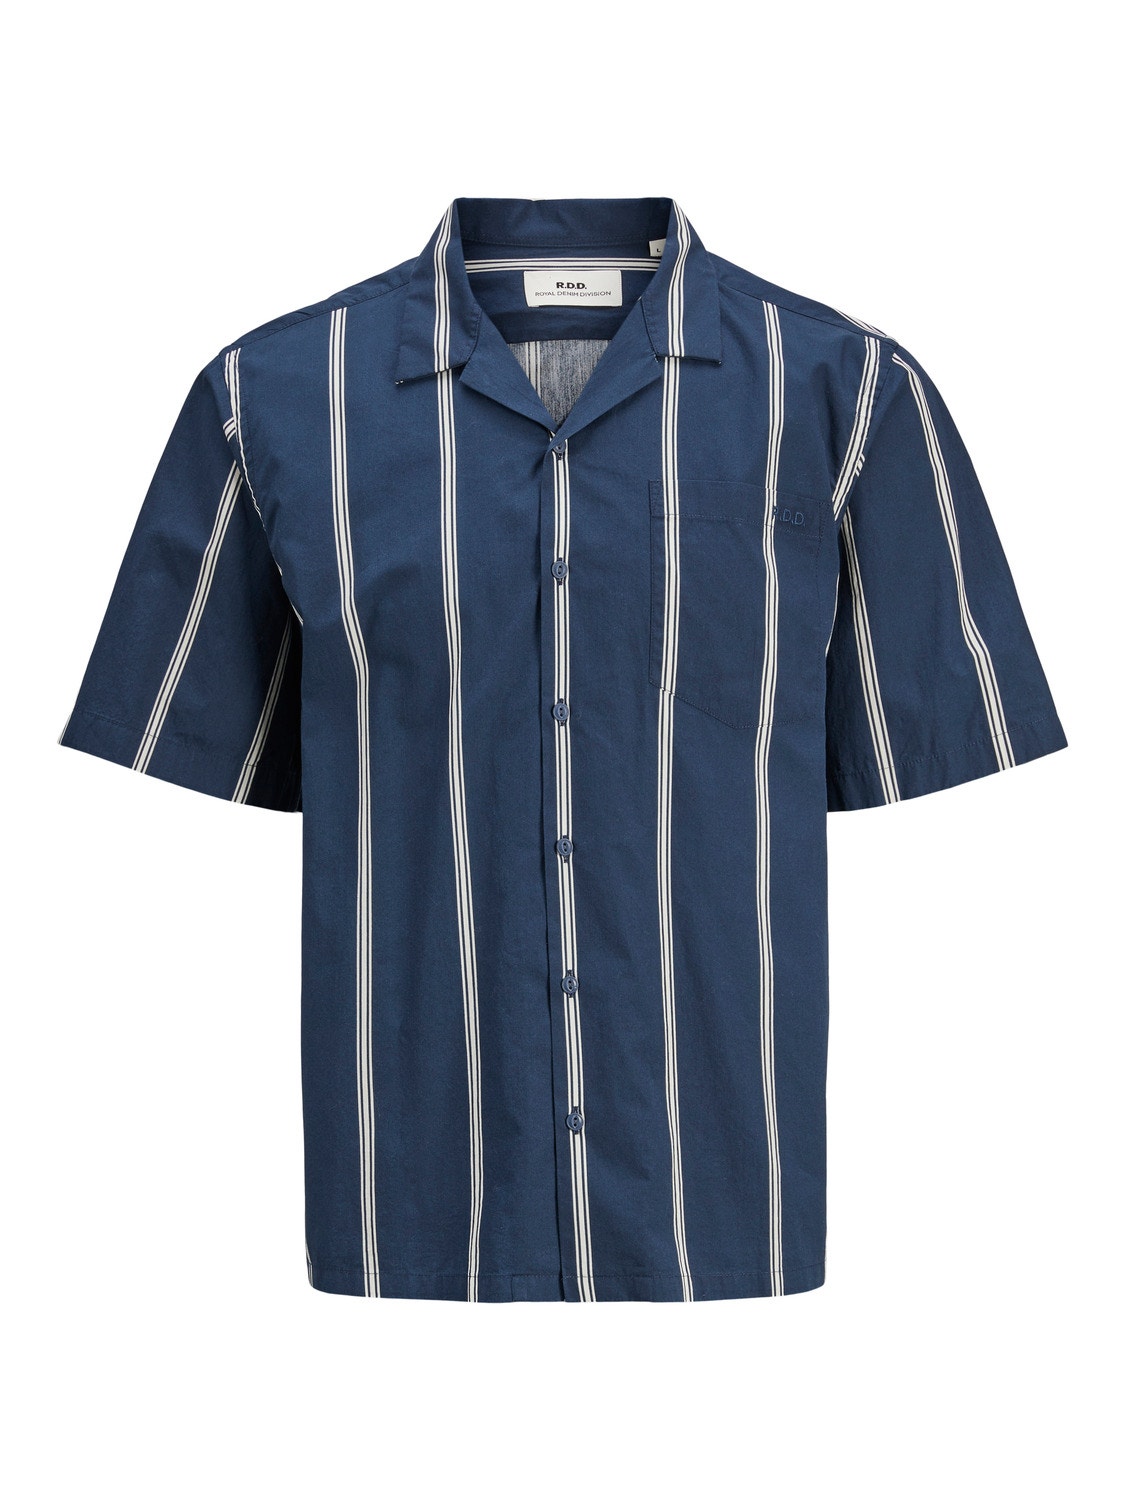 Jack & Jones RDD Relaxed Fit Rekreační košile -Navy Blazer - 12232206